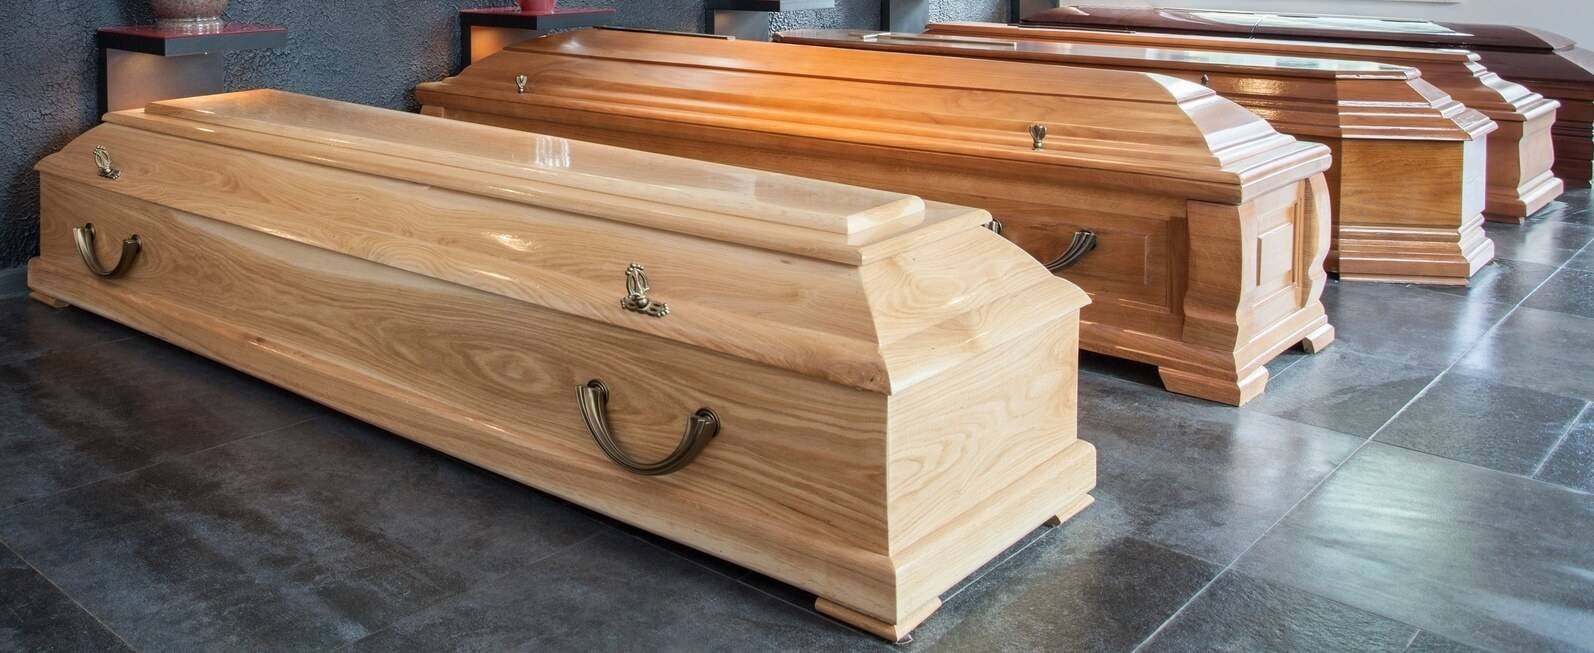 Des cercueils. Image d'illustration